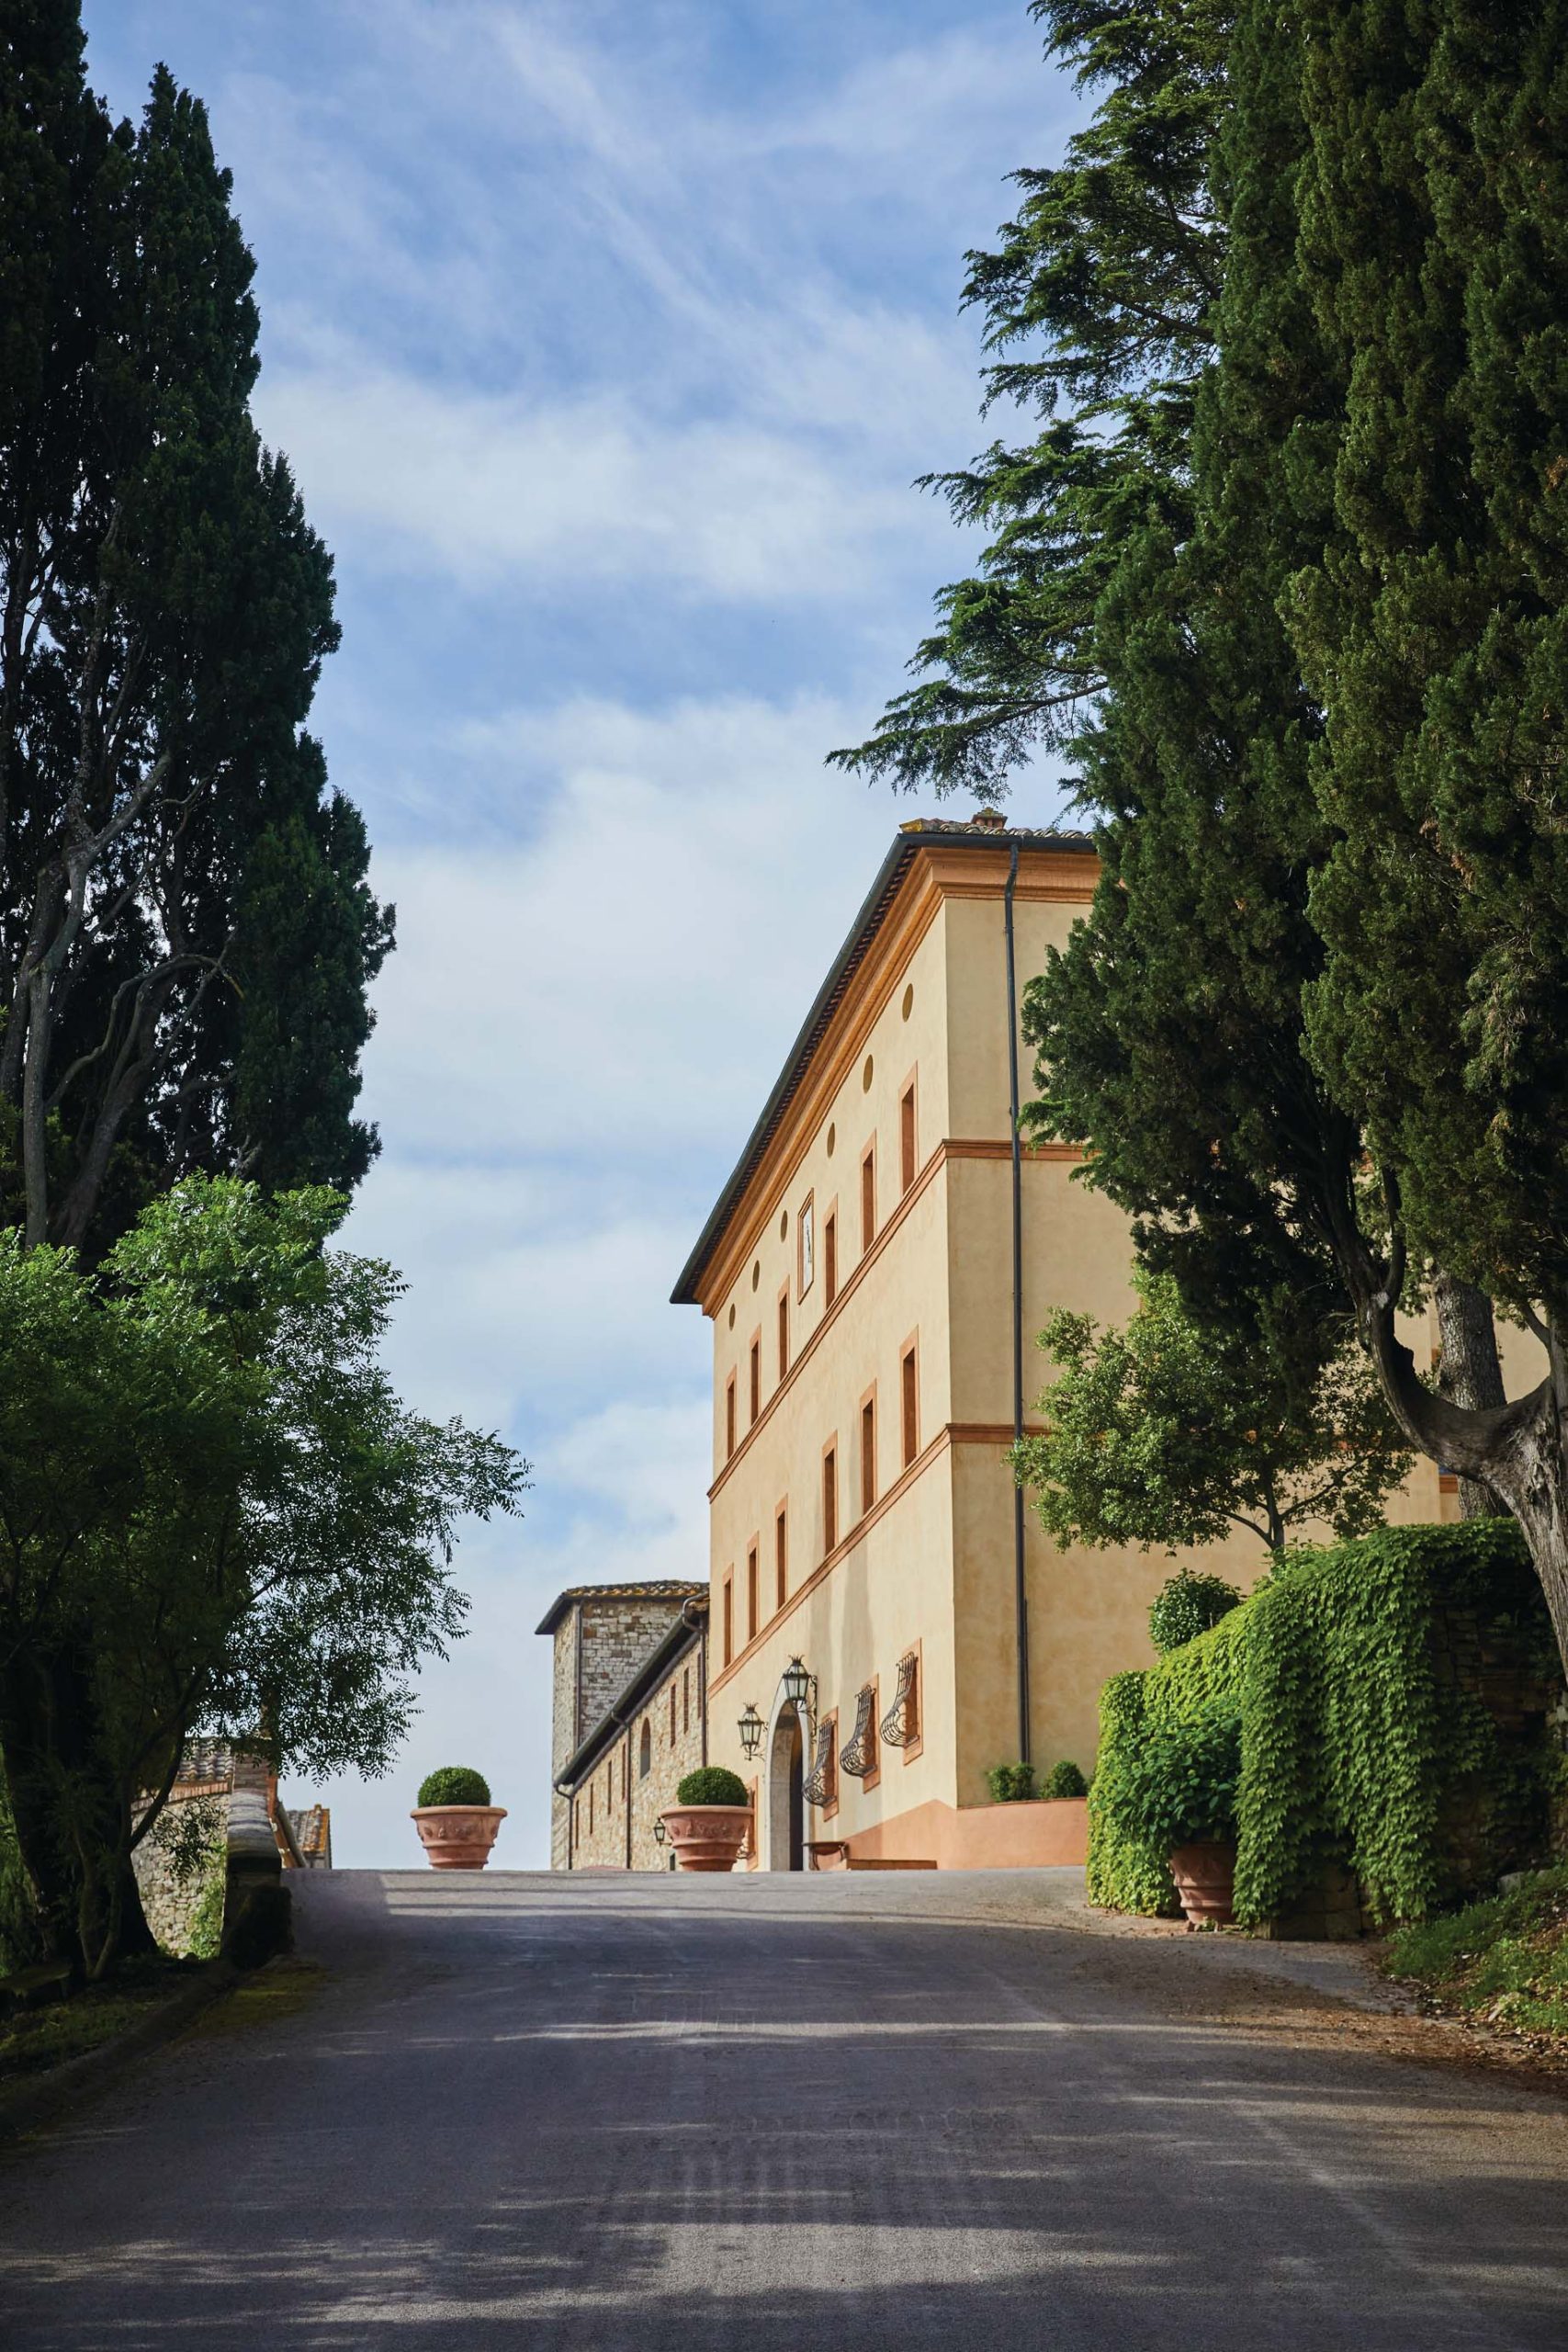 Castello di Casole, A Belmond Hotel, Tuscany – Casole d’Elsa, Italy – Exterior